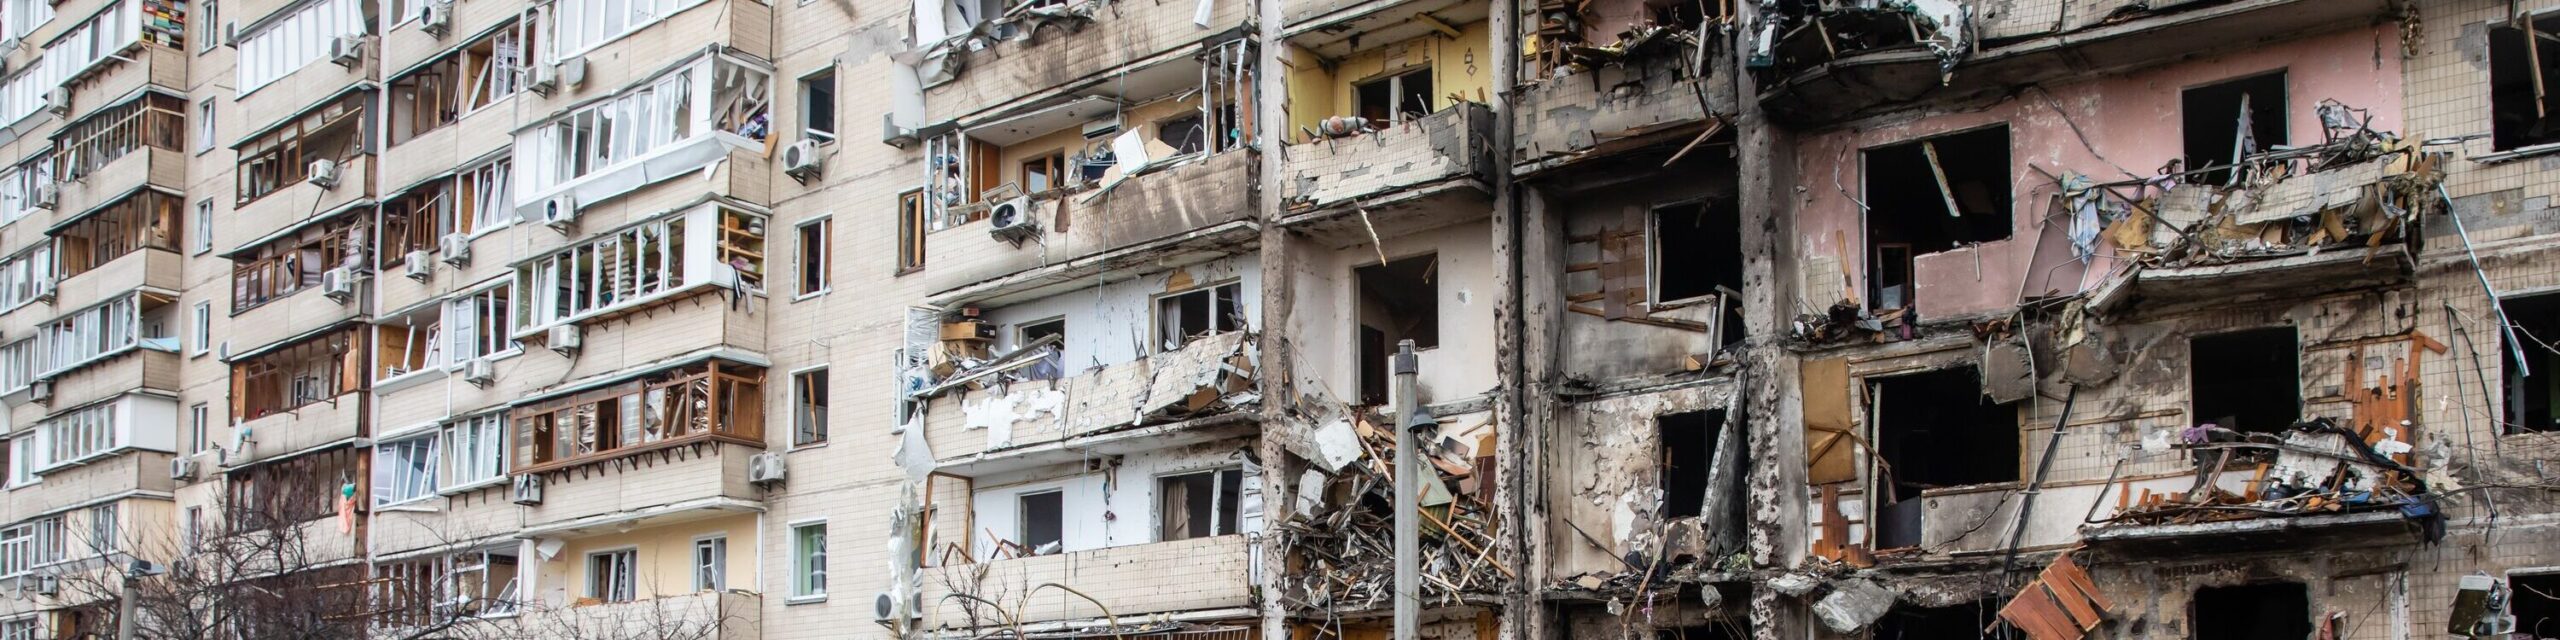 Krieg Russlands gegen die Ukraine. Ein von einem feindlichen Flugzeug beschädigtes Wohnhaus in der ukrainischen Hauptstadt Kiew